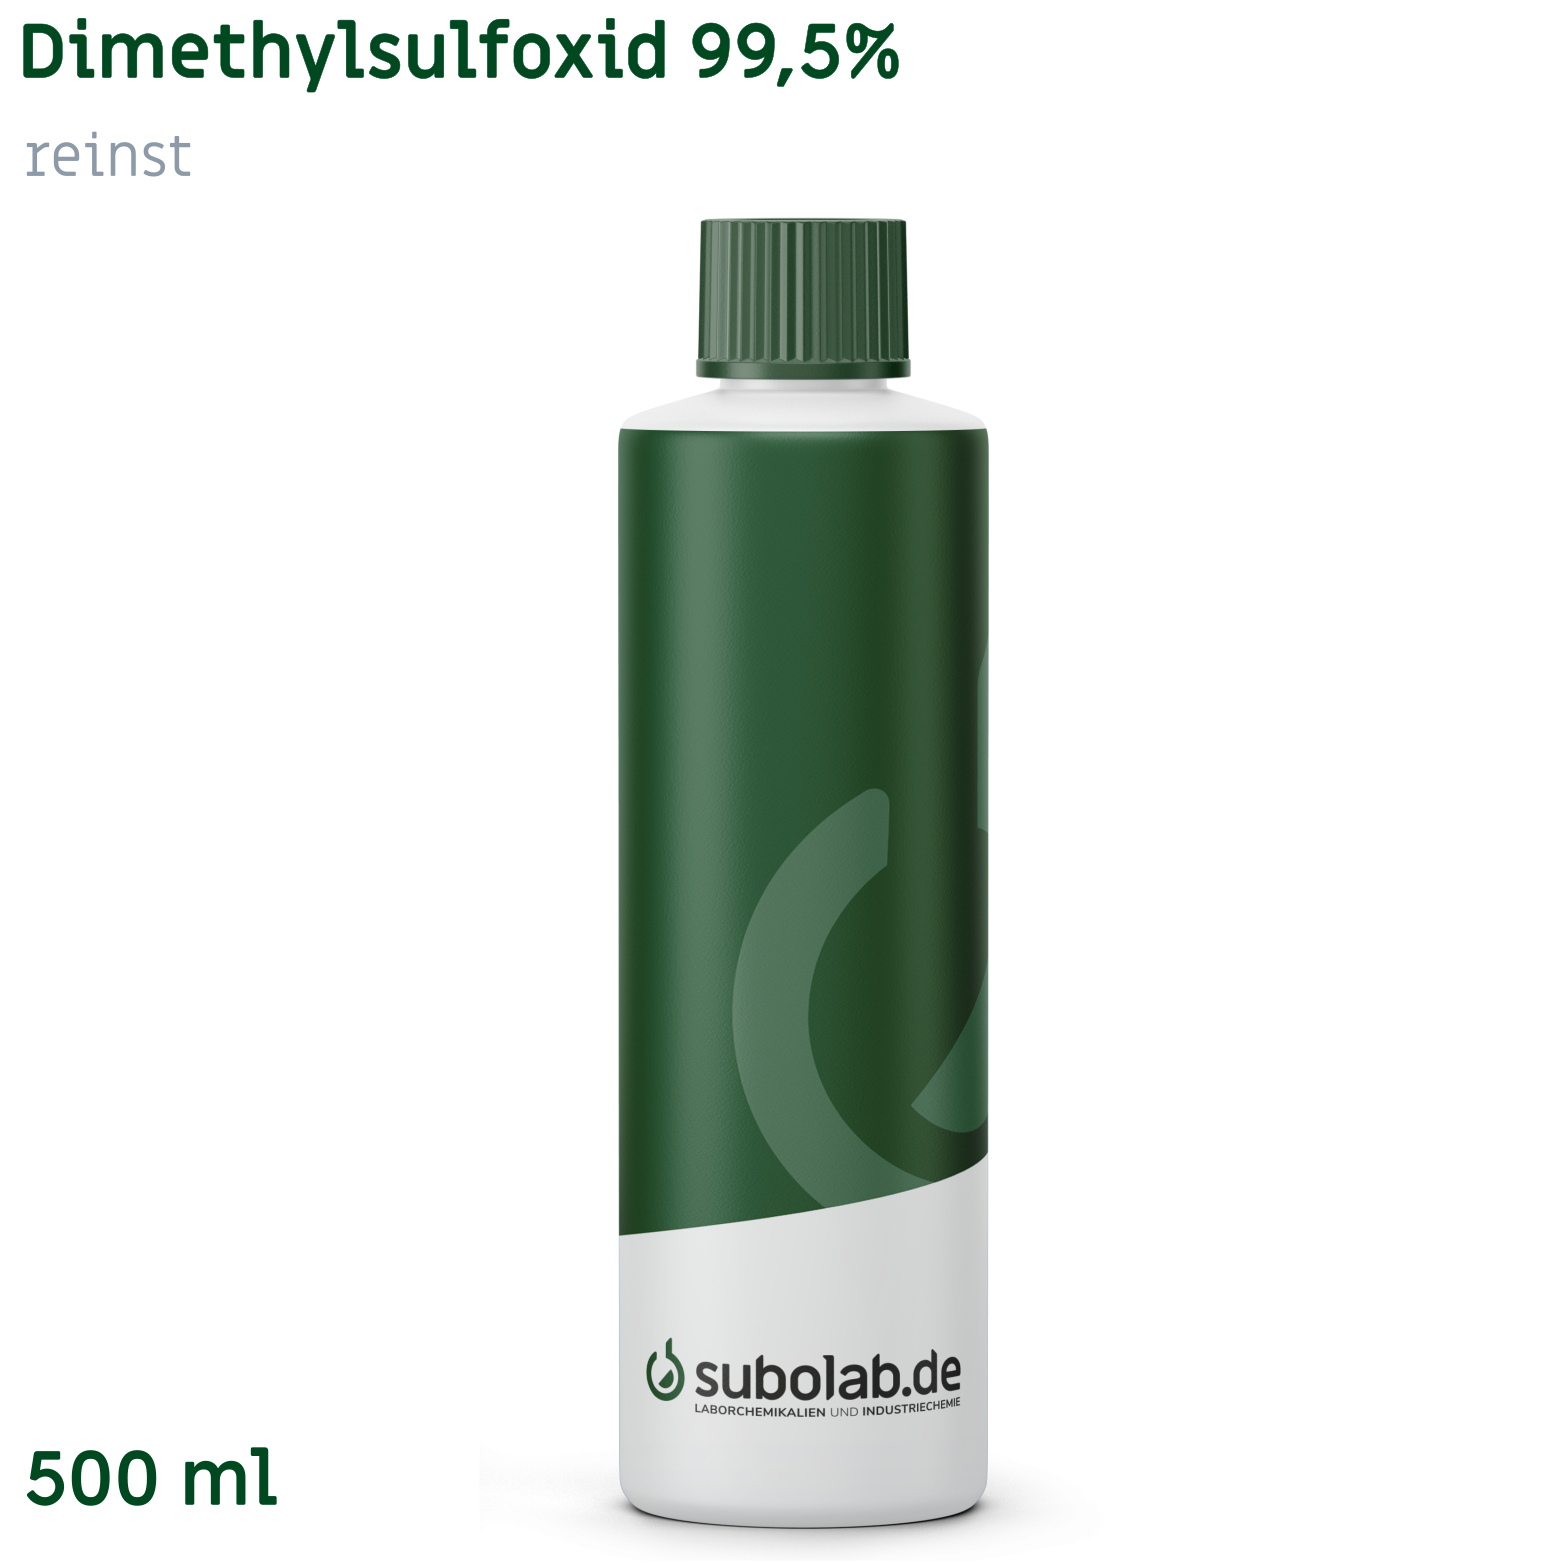 Bild von Dimethylsulfoxid 99,5% reinst (500 ml)